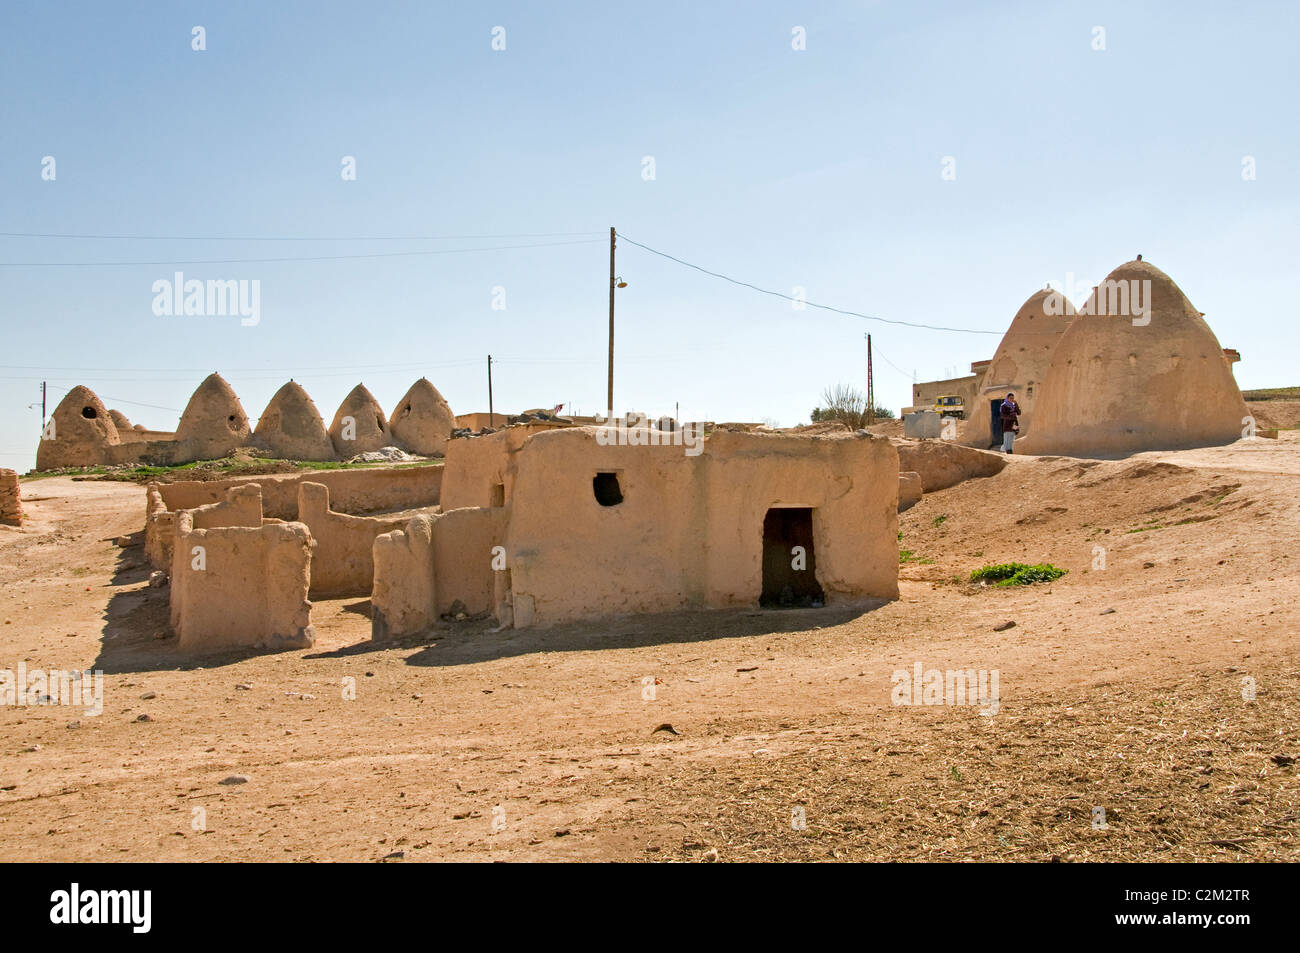 Siria deserto Badiyat al Sham, pecore fattoria, cultura, villaggi beduini beduini, uomo donna, Medio Oriente siriano Foto Stock